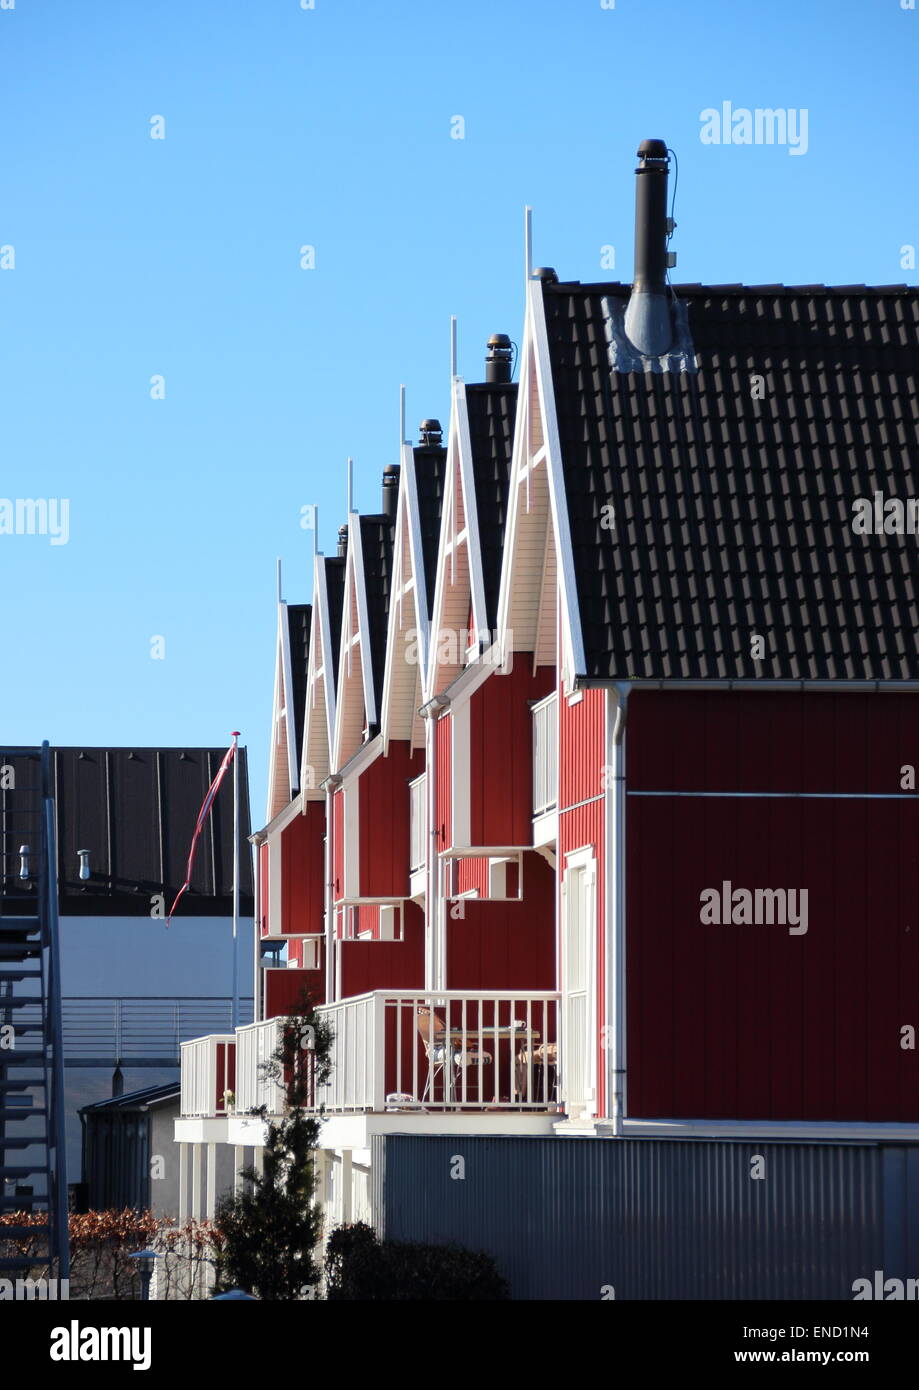 Mietshäuser in rotem Holz mit blauem Himmel Stockfoto